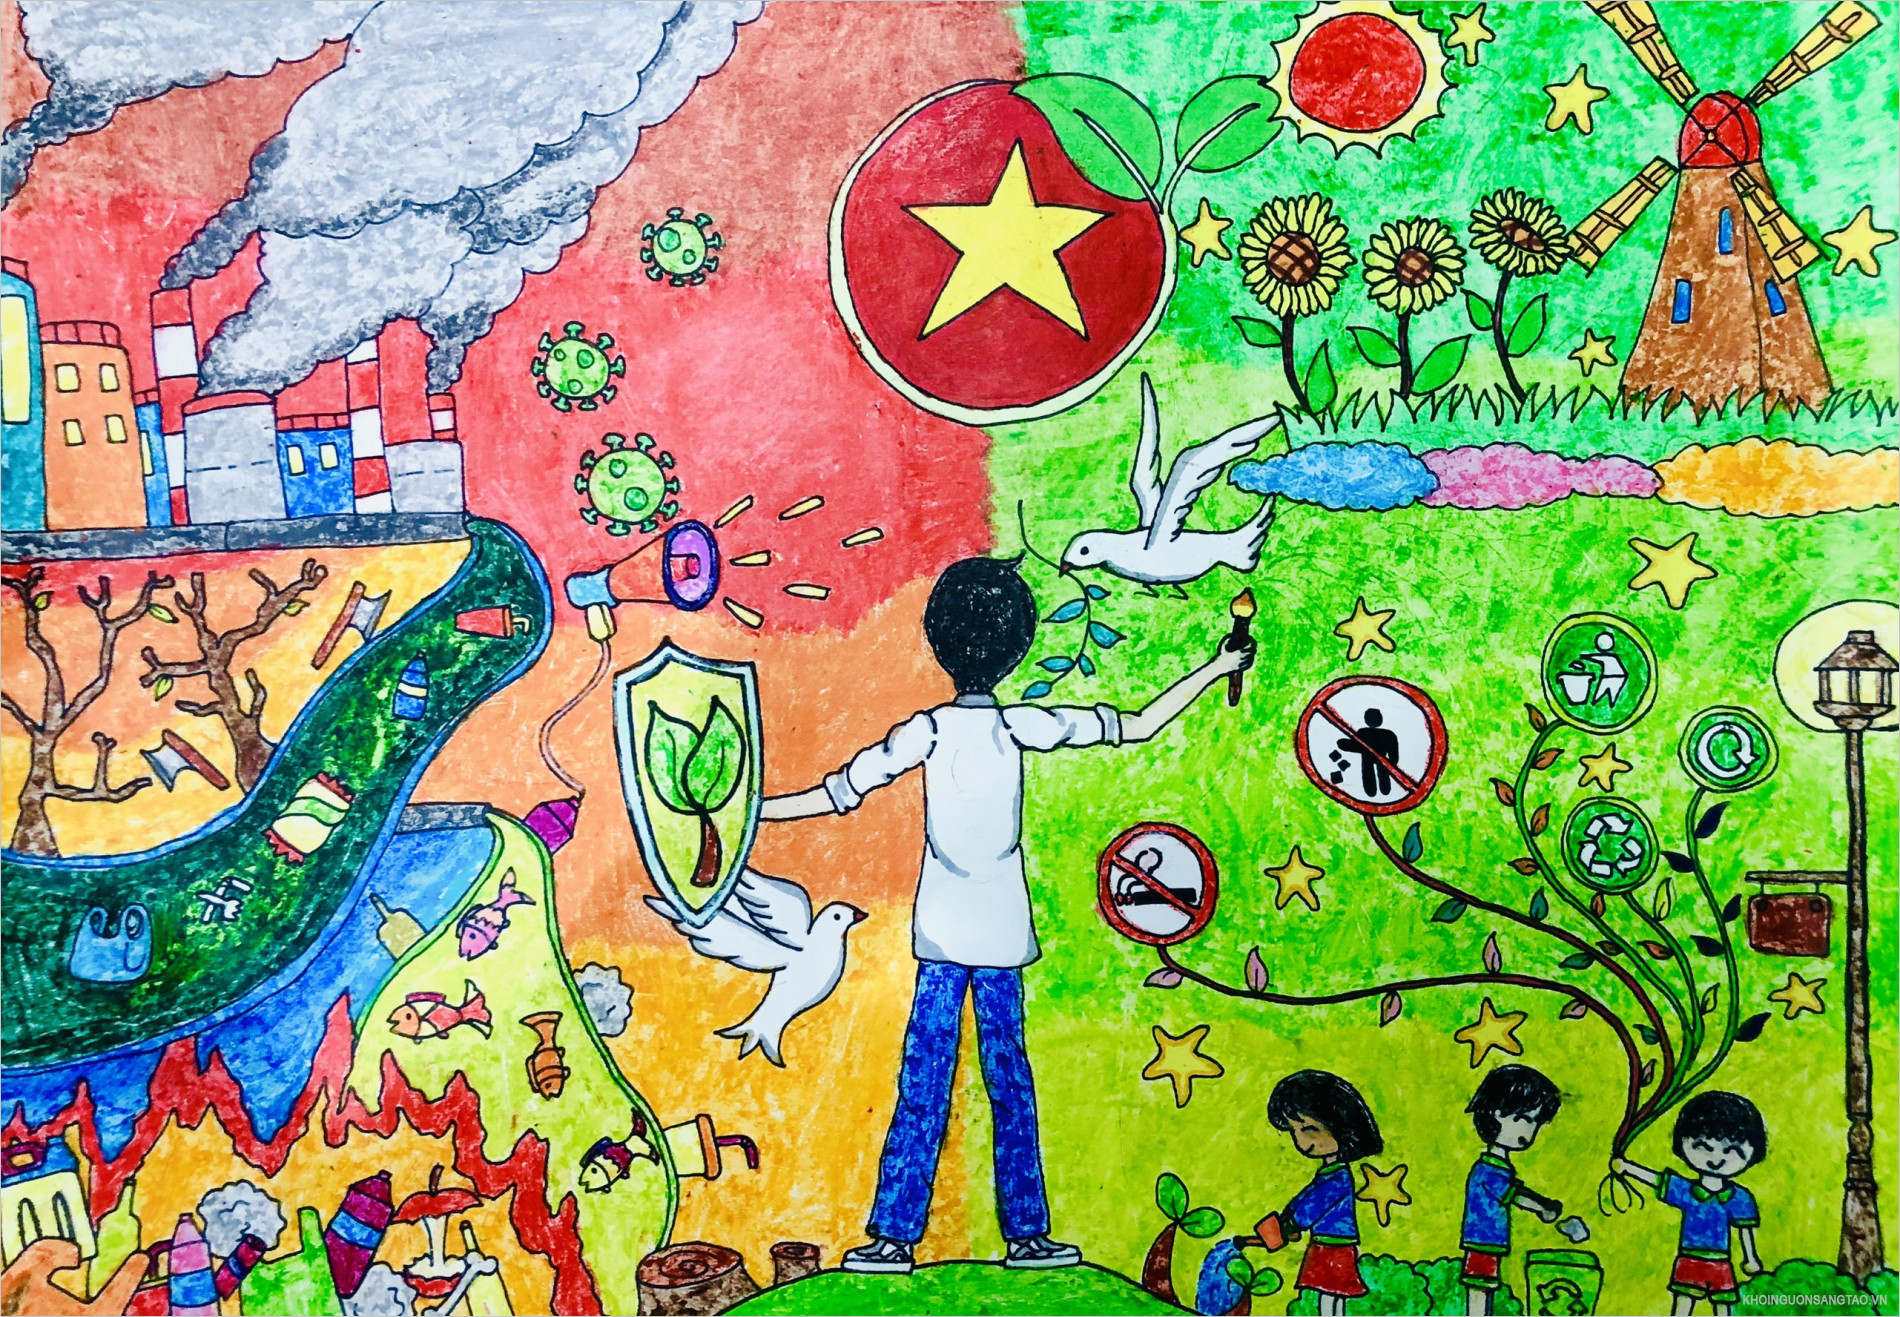 Vẽ tranh đề tài bảo vệ môi trường  Vẽ tranh các em thiếu nhi trồng rừng để  cứu trái đất  YouTube